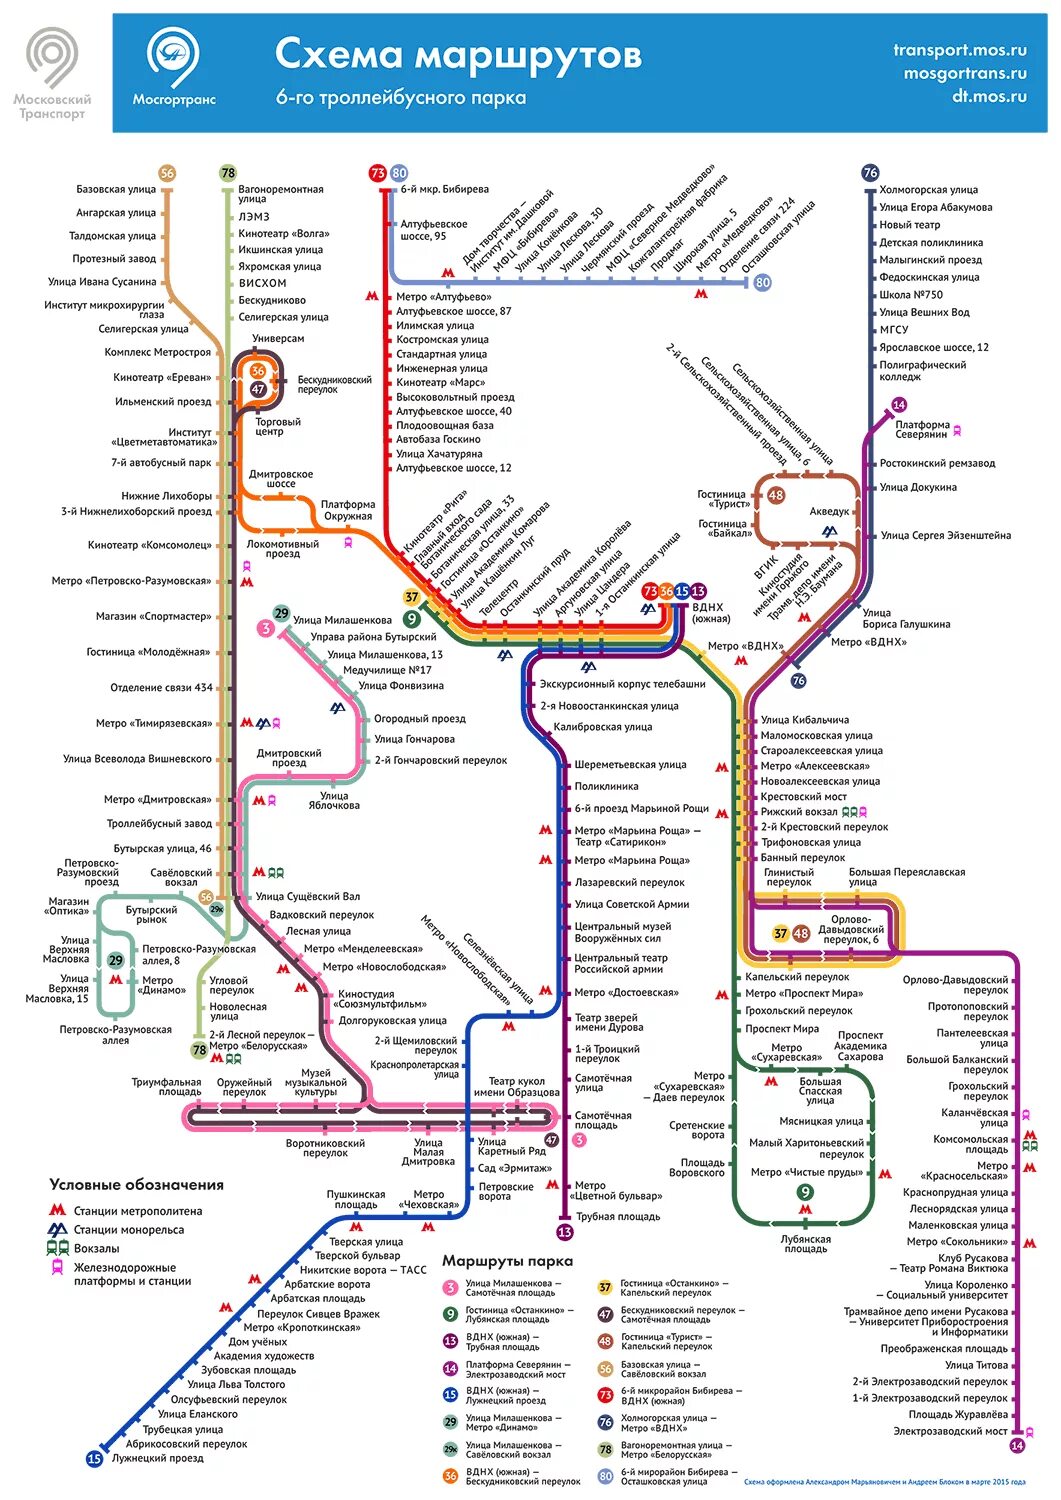 Трамвай 25 маршрут остановки. Схема маршрутов троллейбуса троллейбусный парк 1 СПБ. Схема маршрутов троллейбусов Москвы. Схема маршрутов троллейбусов 7 троллейбусного парка Москва. Схема маршрутов 2 троллейбусного парка Москвы.